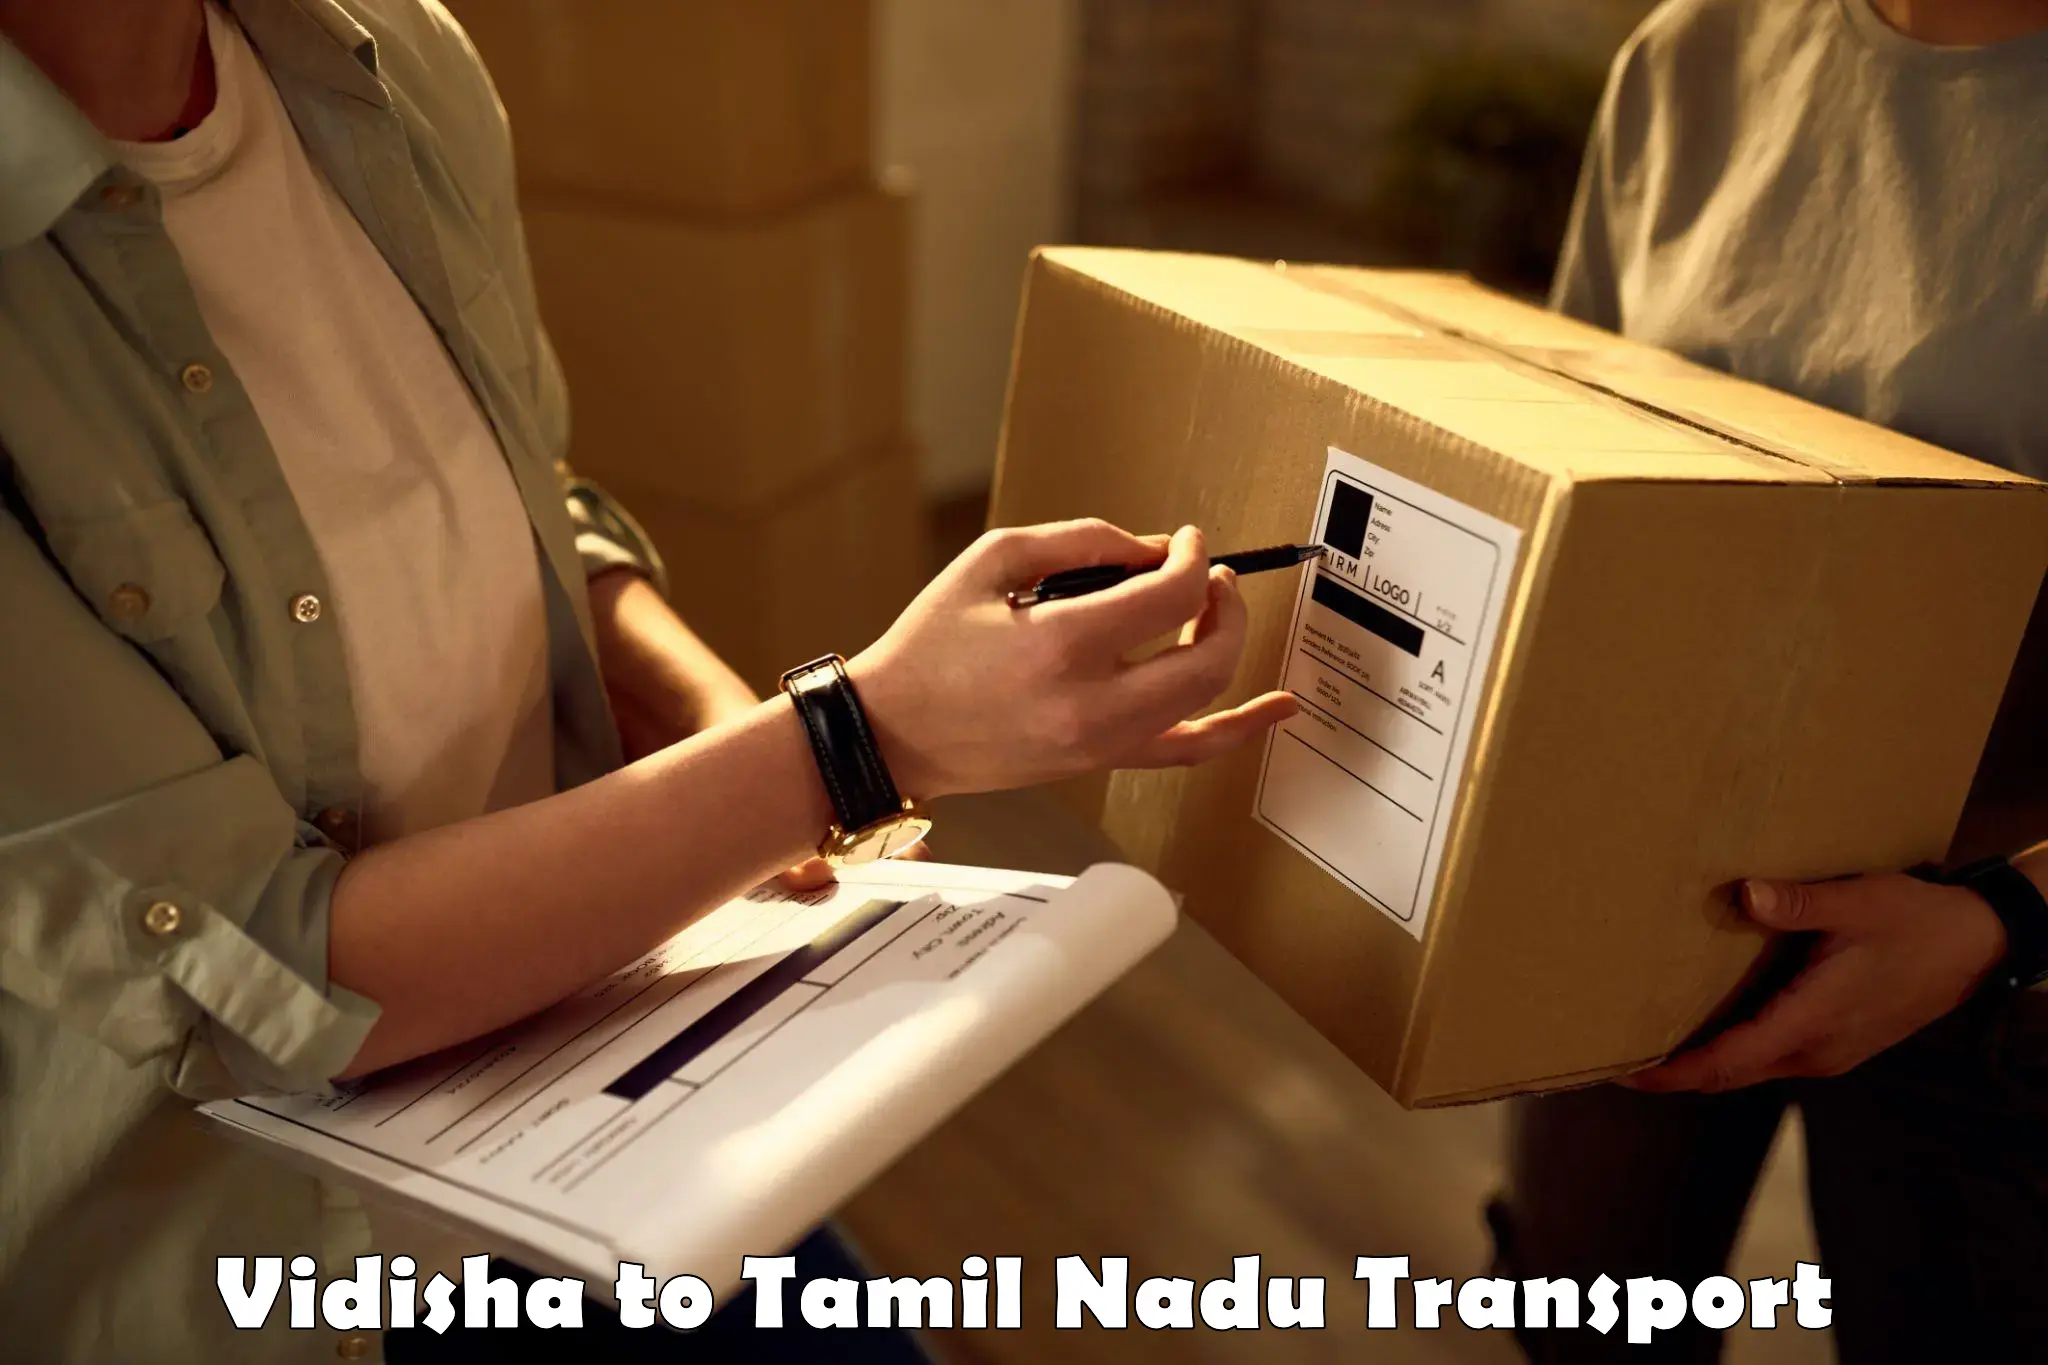 Furniture transport service Vidisha to NIT Tiruchirapalli